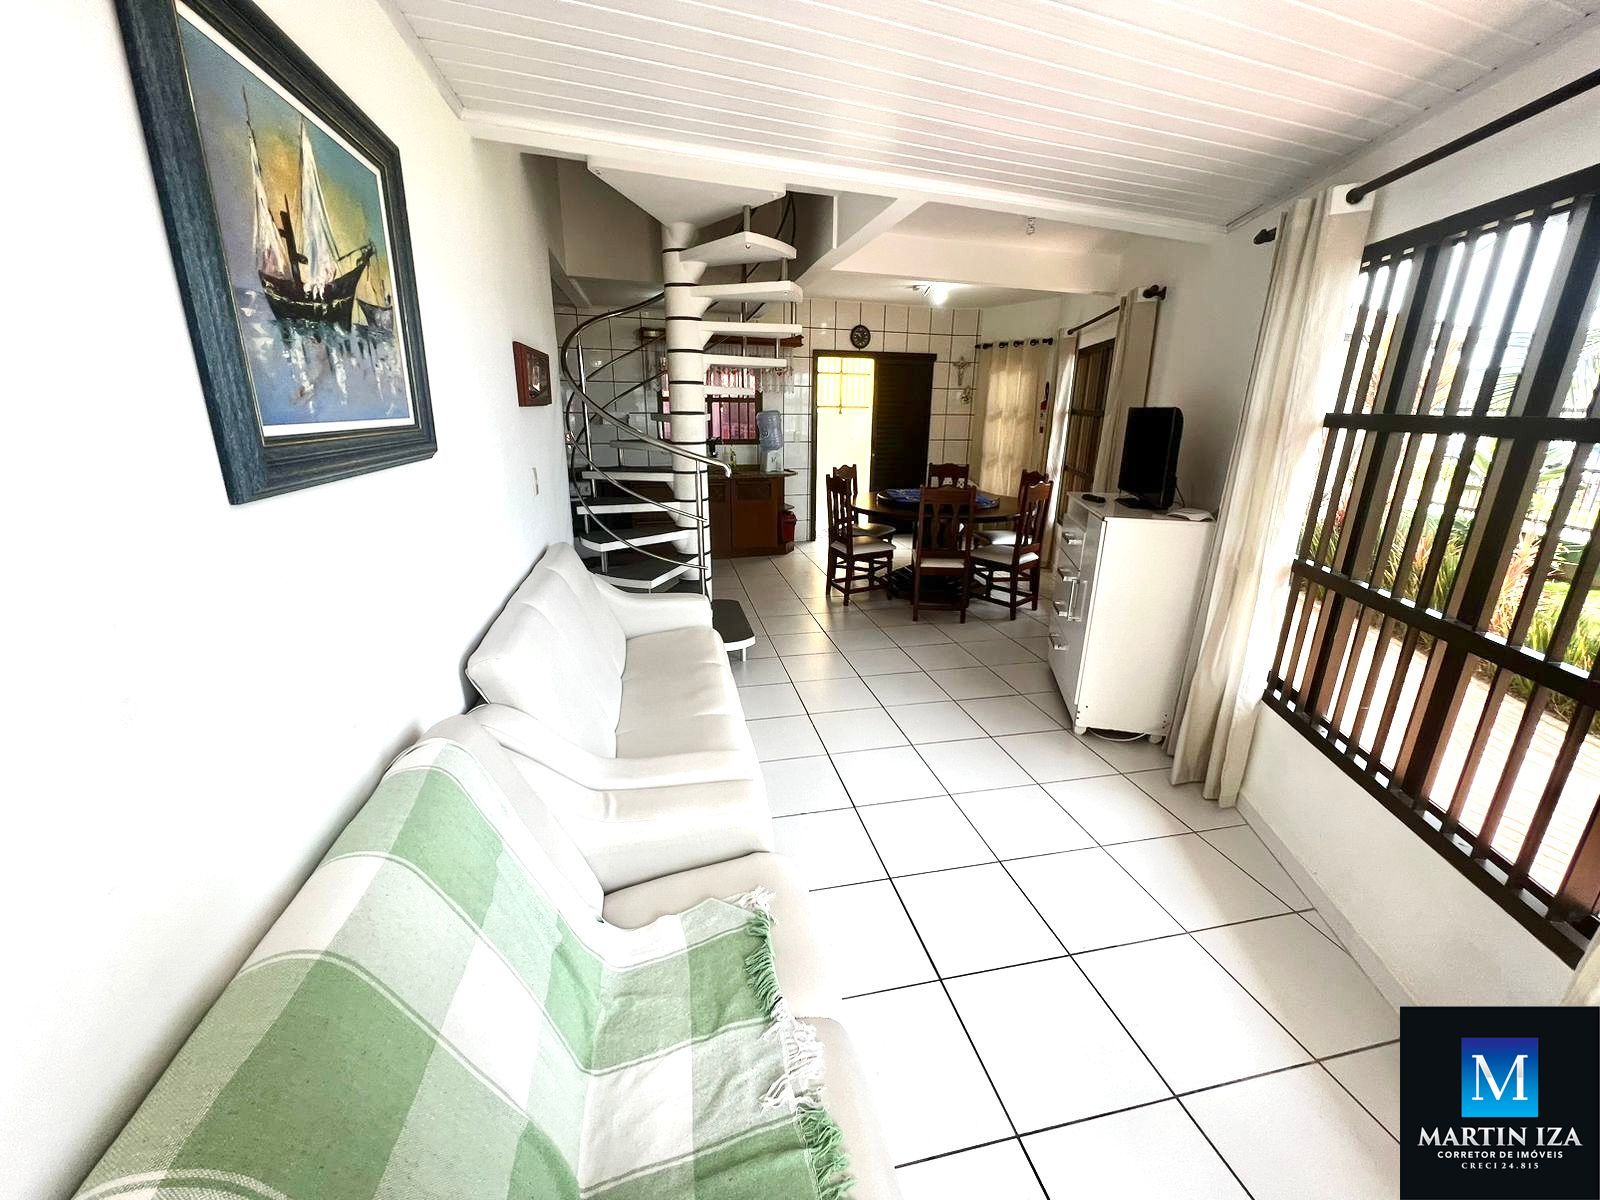 Apartamento com 3 Dormitórios para alugar, 100 m² por R$ 800,00